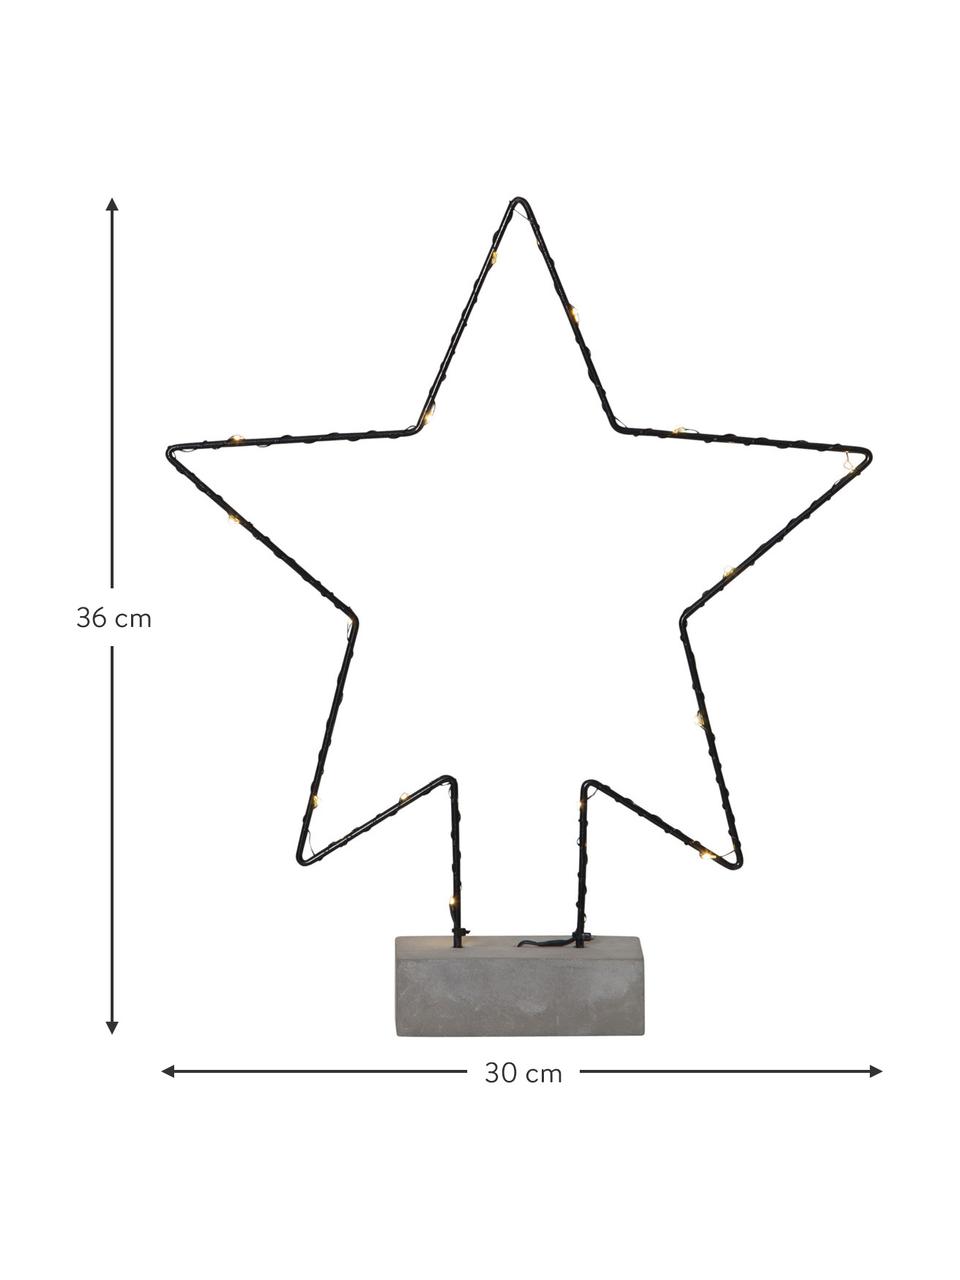 LED Leuchtobjekt Cemmy H 36 cm, batteriebetrieben, Sockel: Beton, Schwarz, Dunkelgrau, B 30 x H 36 cm